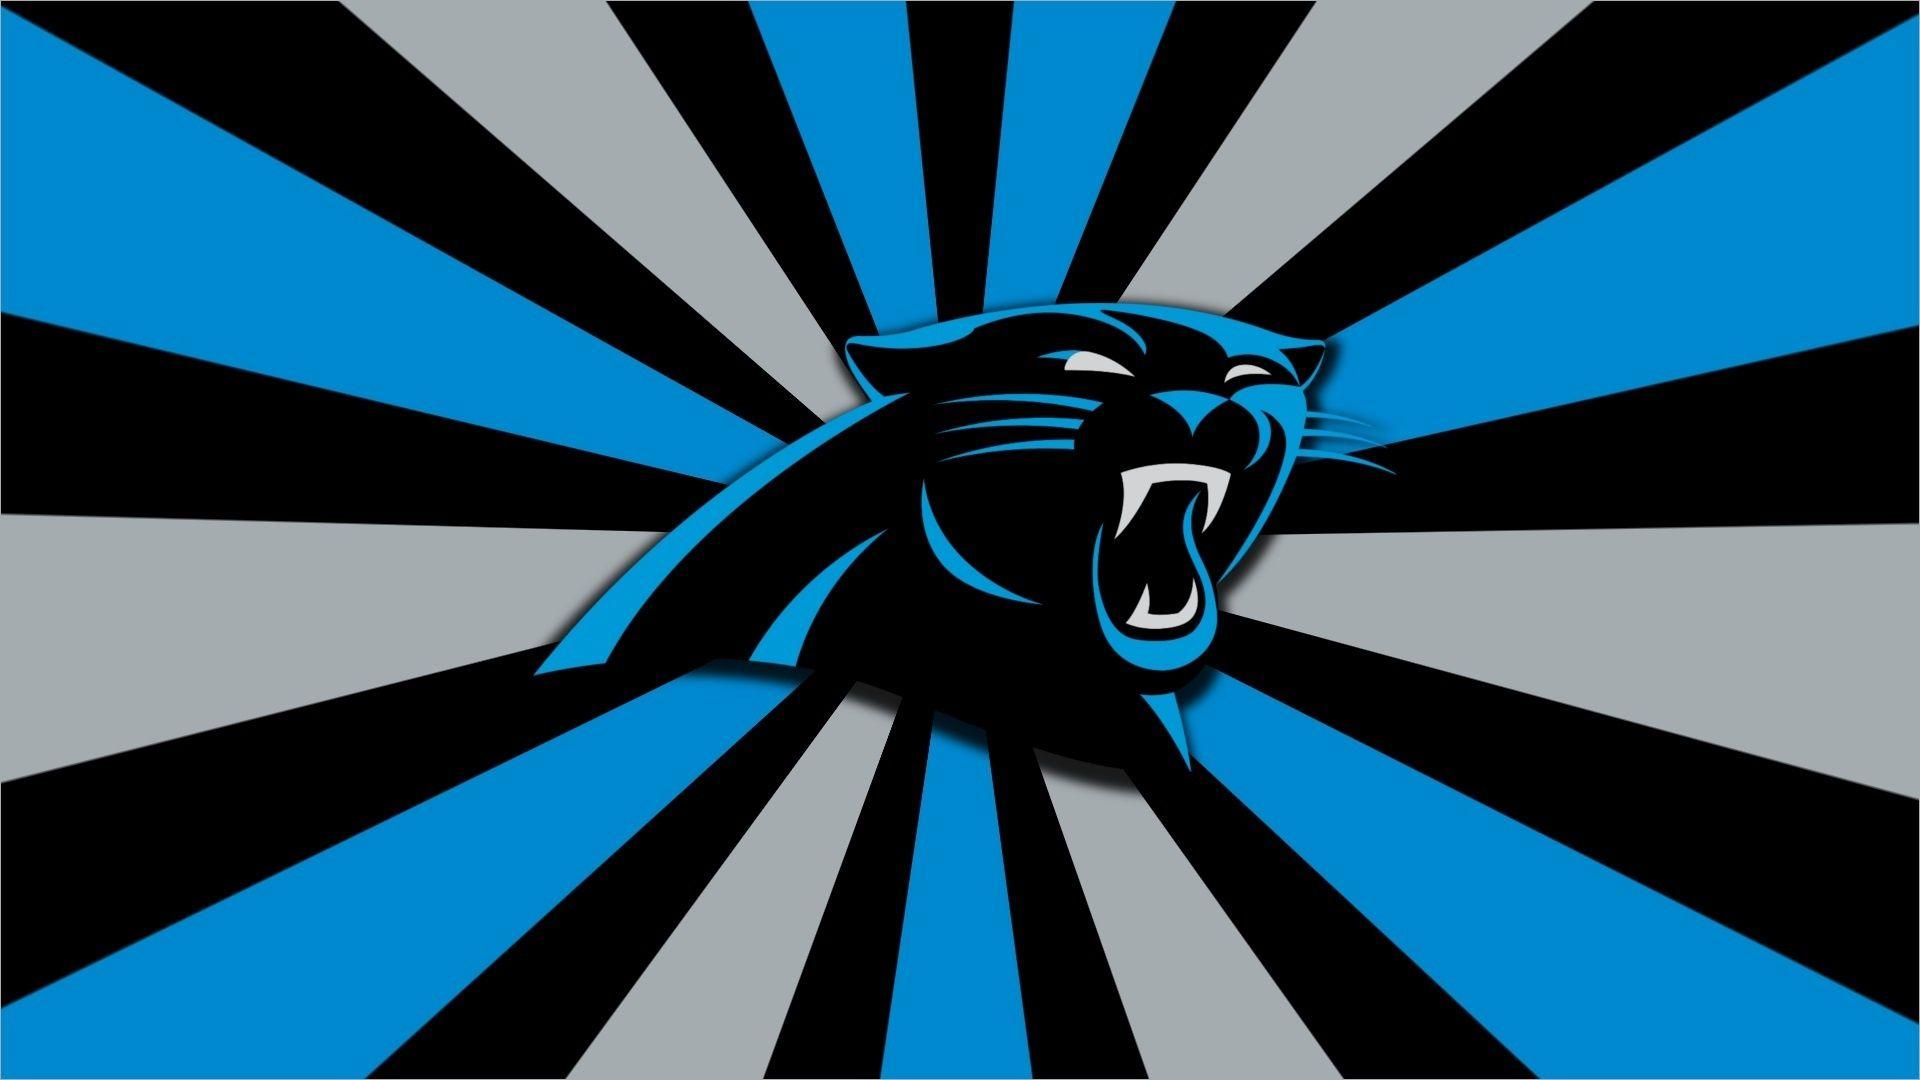 Carolina Panthers Logo - Carolina Panthers Logo Wallpaper HD | PixelsTalk.Net